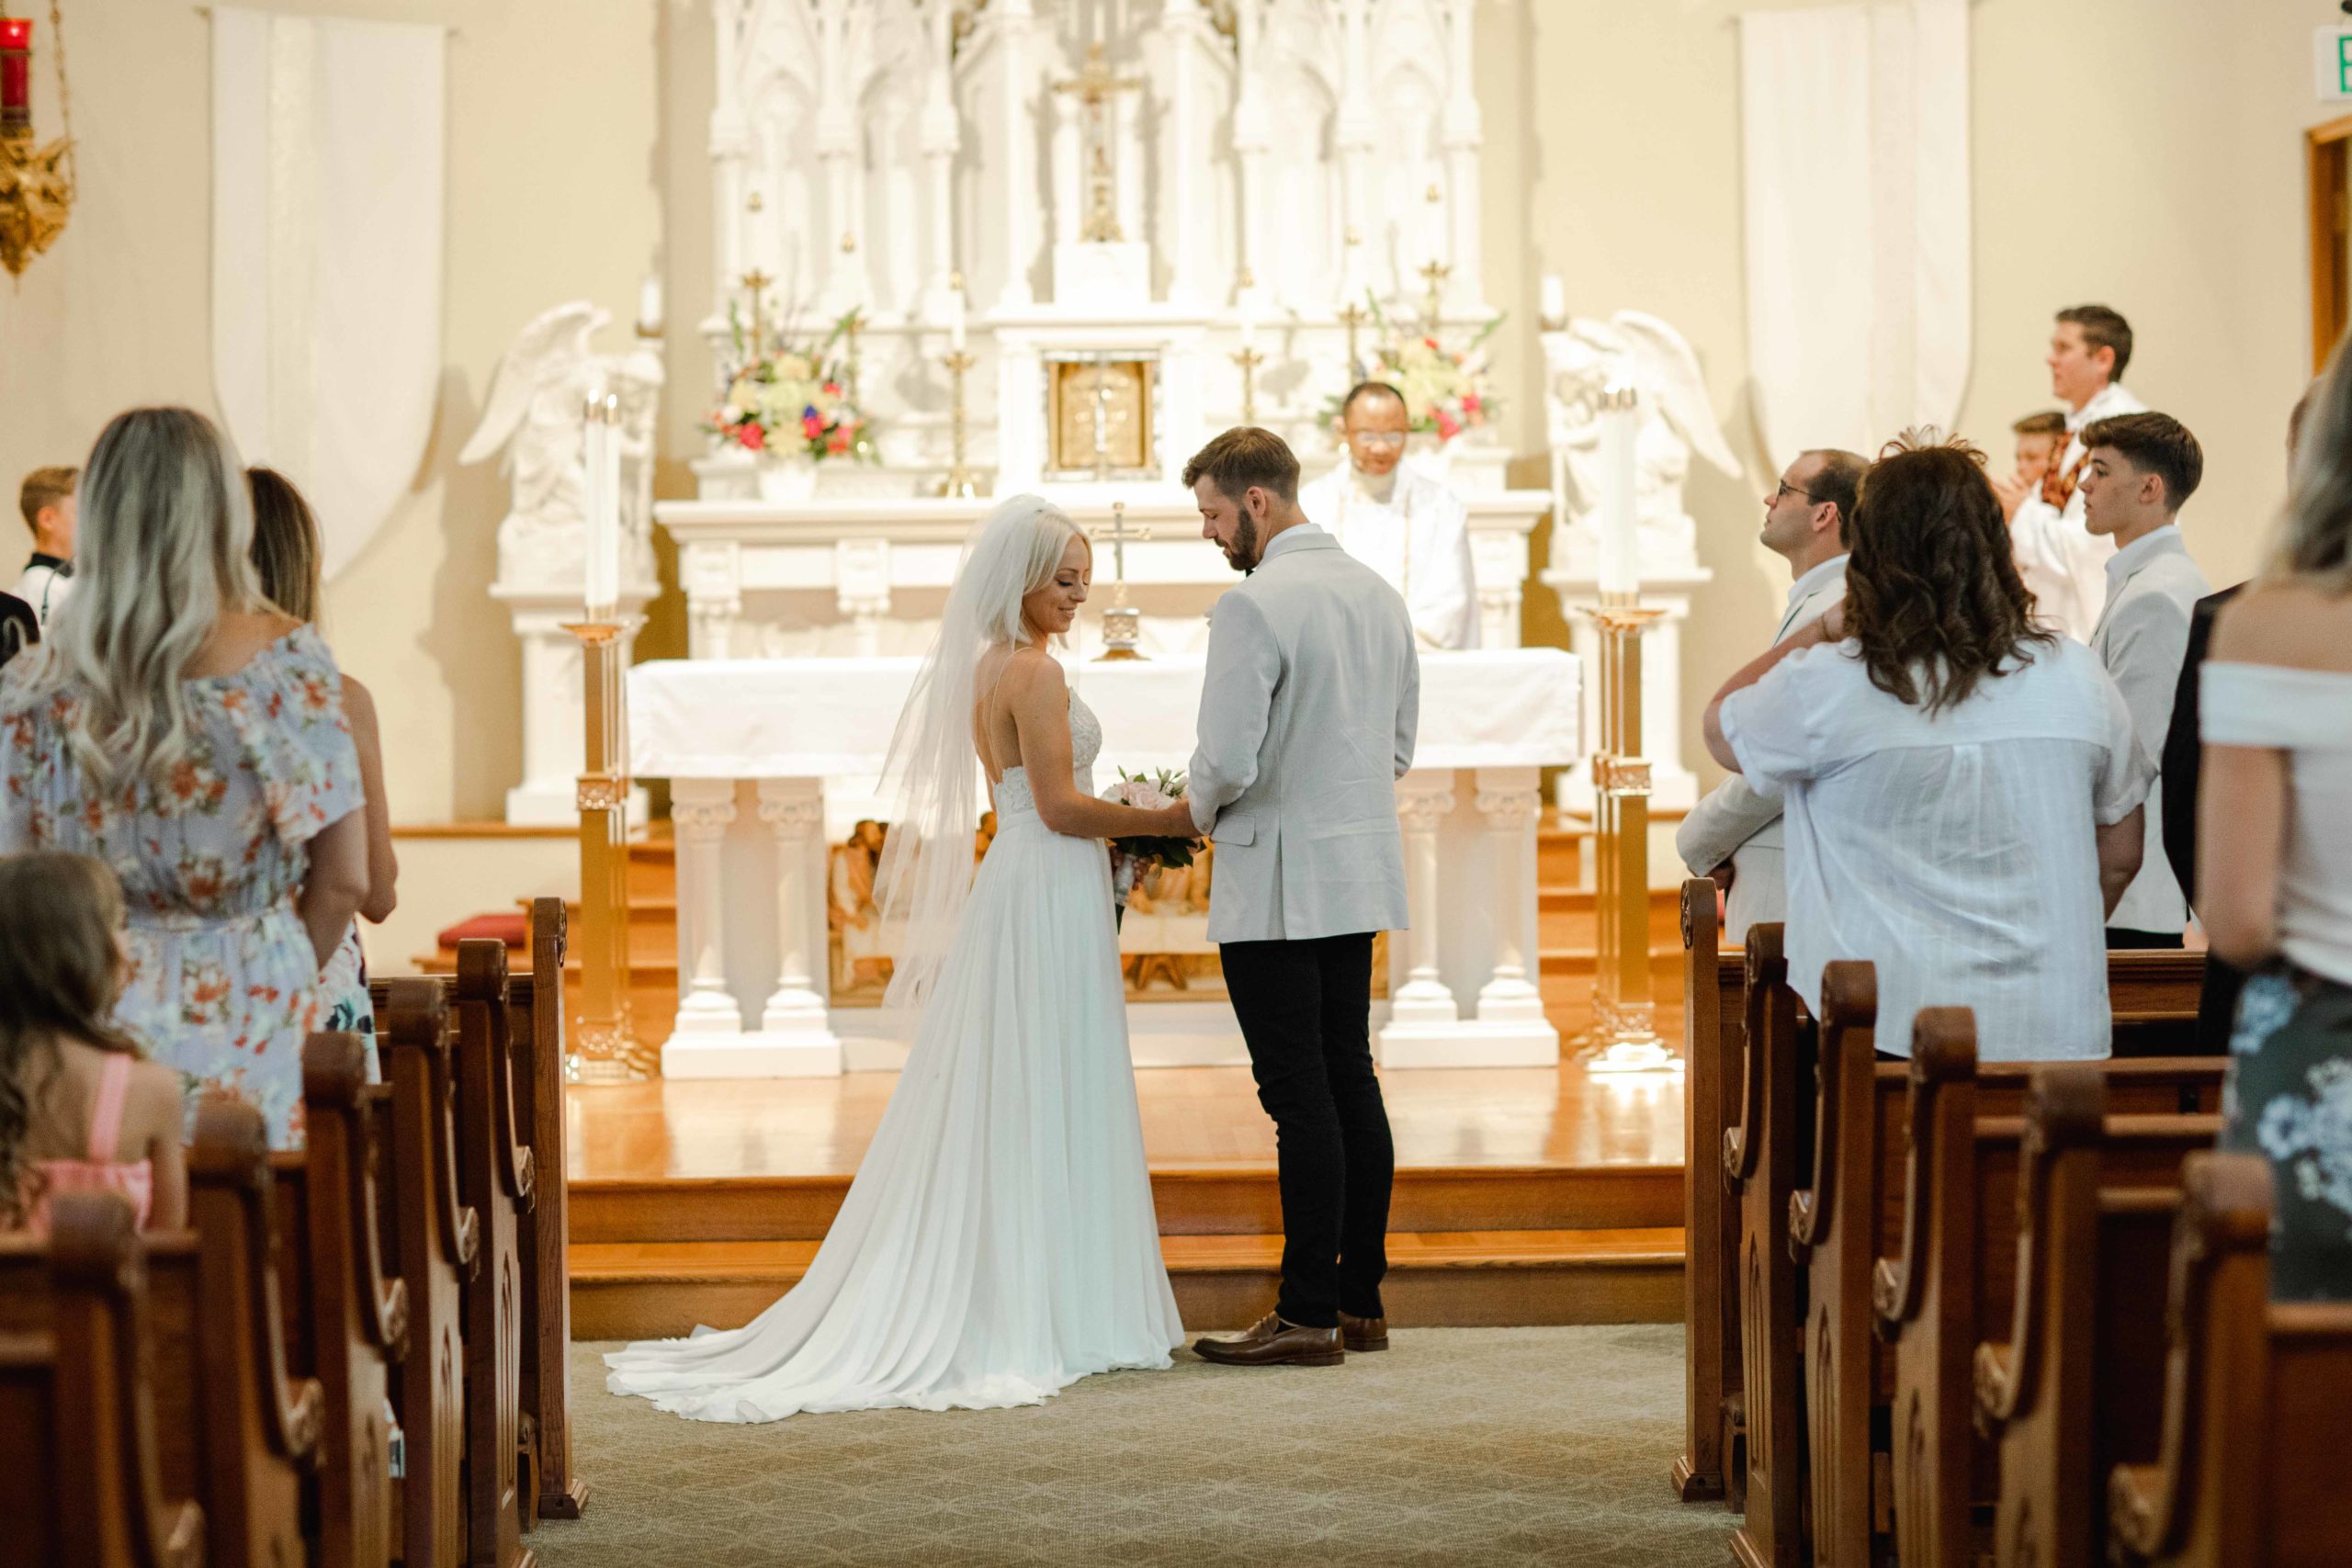 Catholic Church wedding ceremony by Elgin Illinois Wedding Photographer